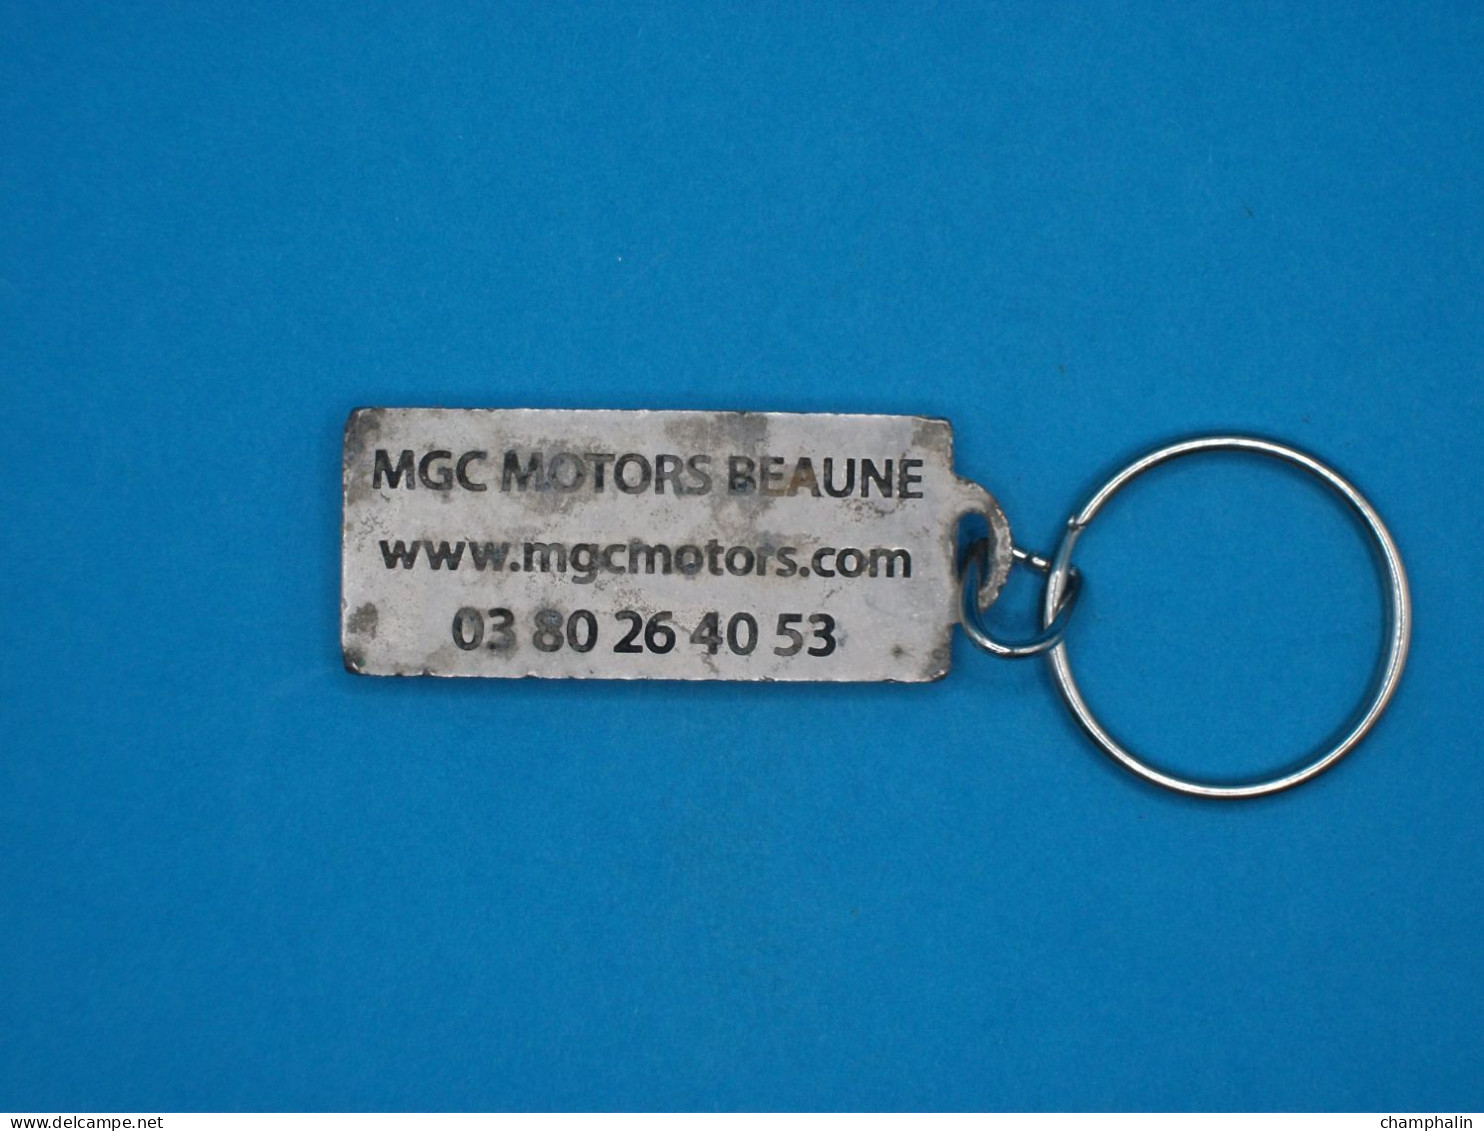 Porte-clé Métal - Audi MGC Motors à Beaune (21) - Www.mgcmotors.com - Automobile Voiture Concessionnaire Garage - Porte-clefs